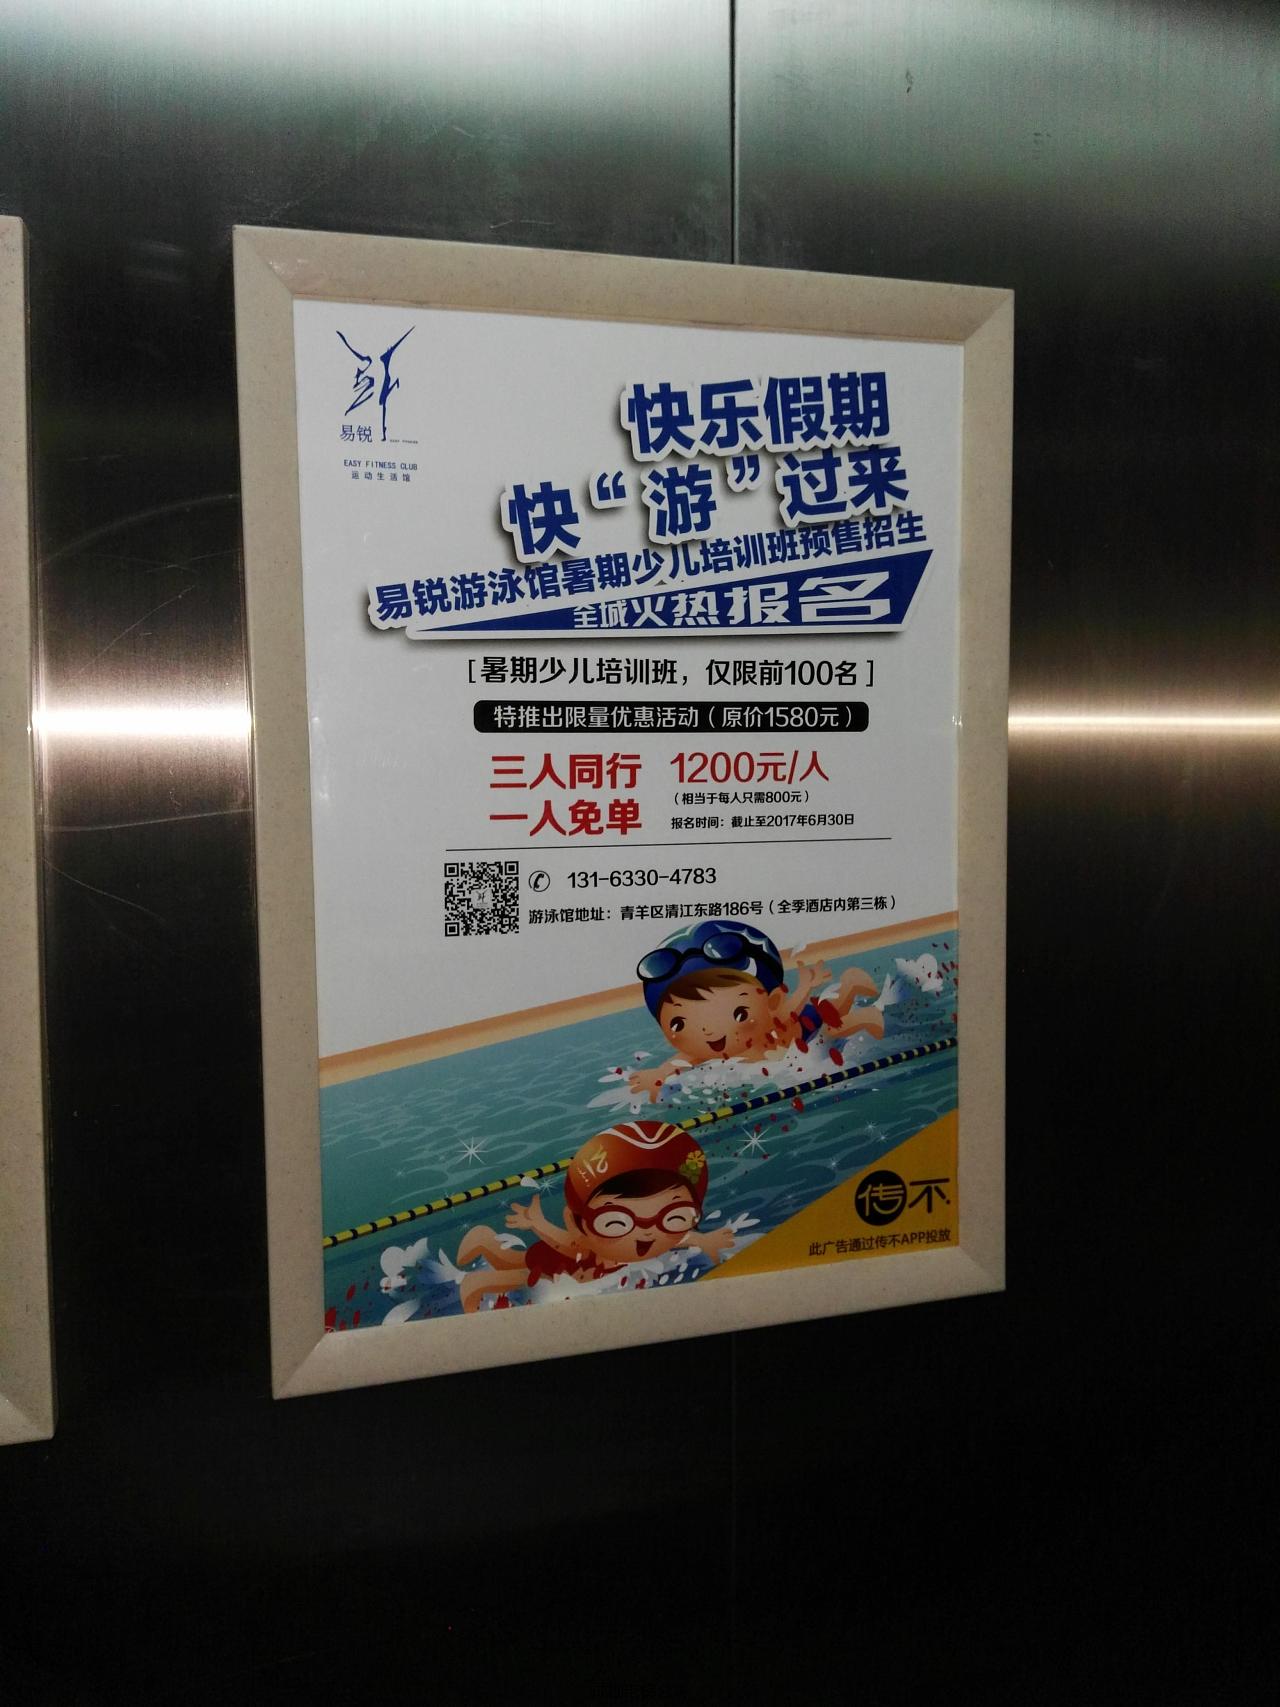 电梯广告设计案例,制作示例